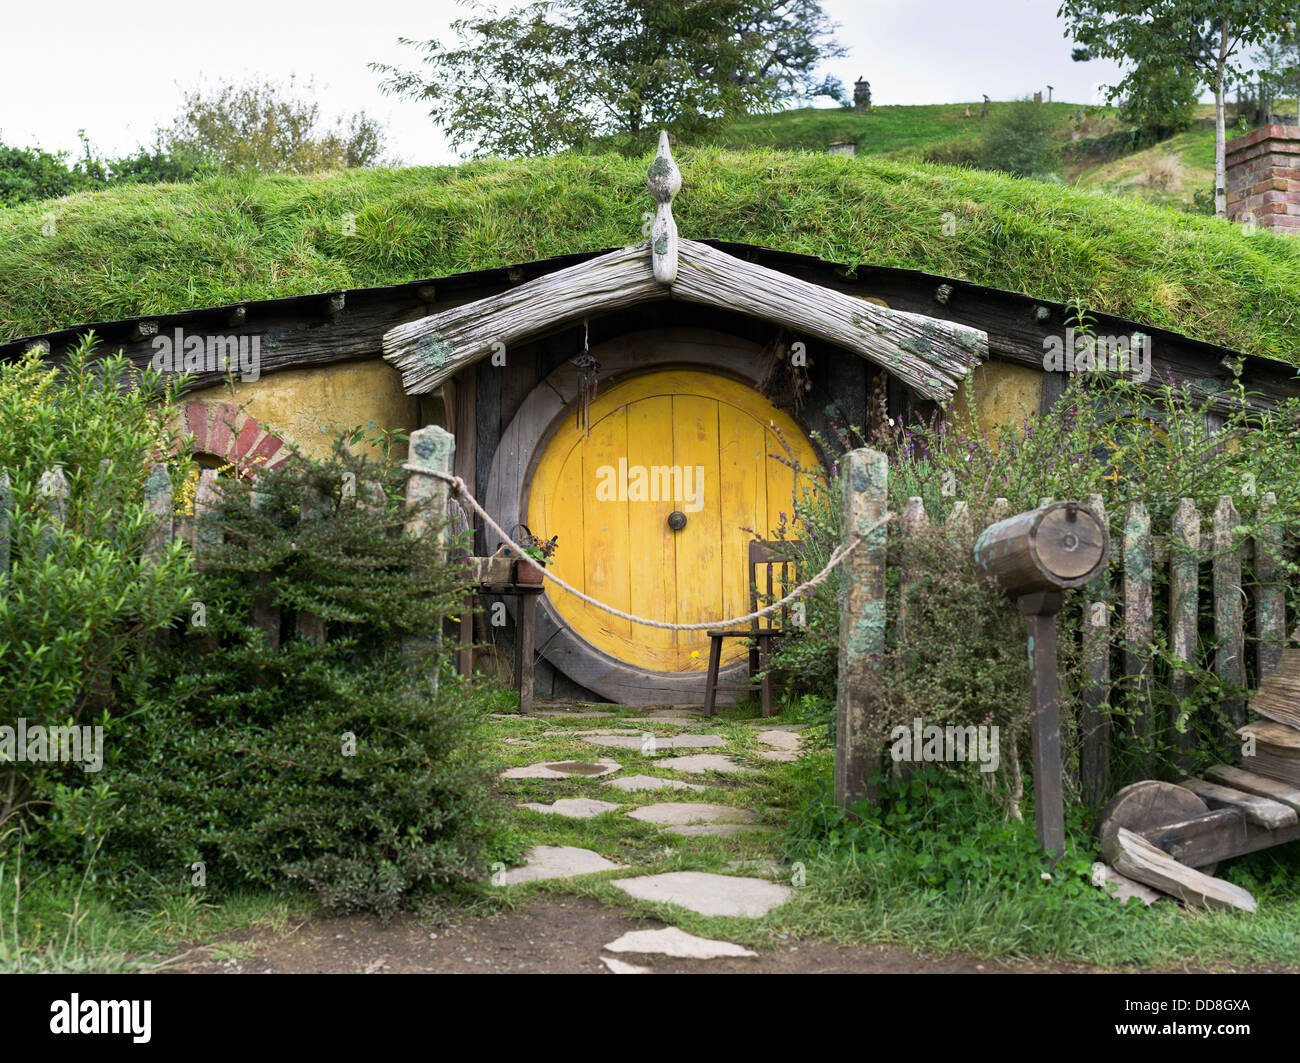 Dh Hobbits puerta NUEVA ZELANDIA HOBBITON cottage garden película movie site de El Señor de los anillos films hobbit house la tierra media Foto de stock